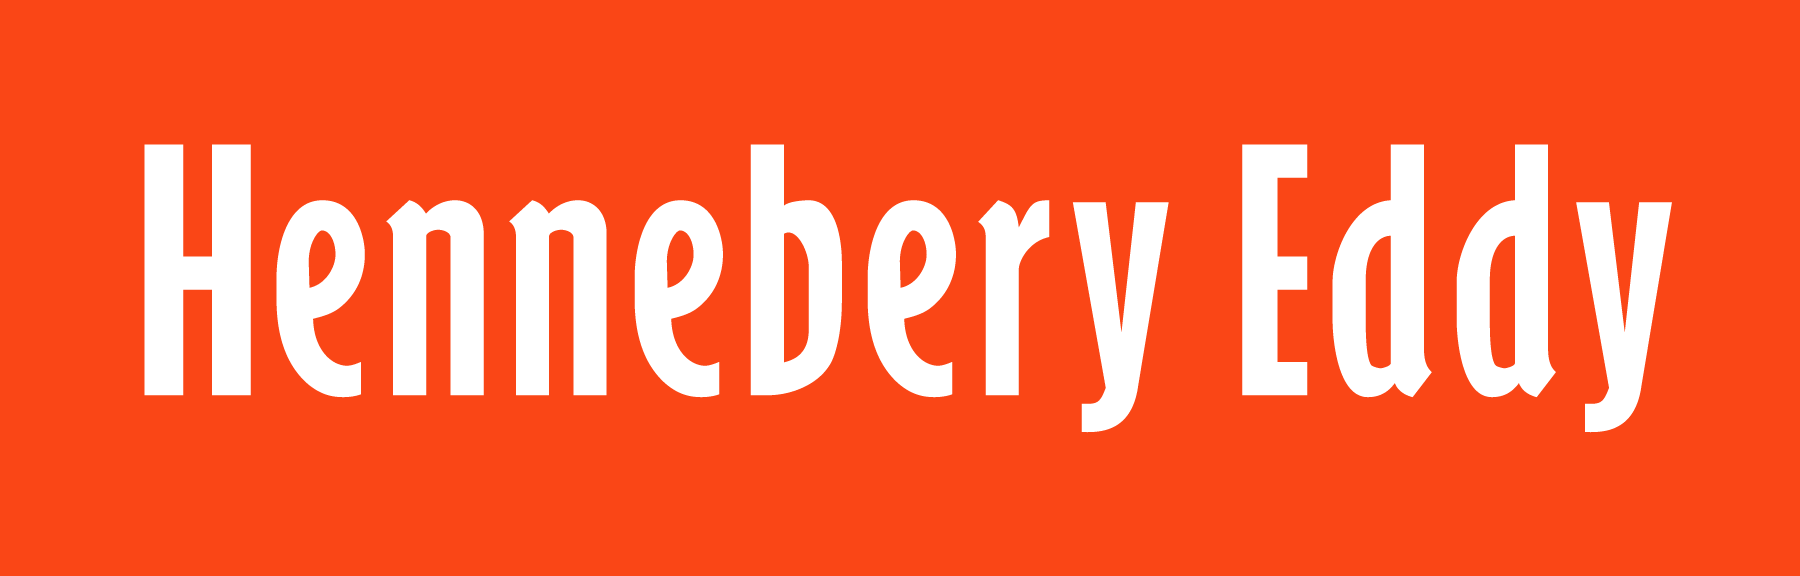 Hennebery Eddy Architects Logo 2024